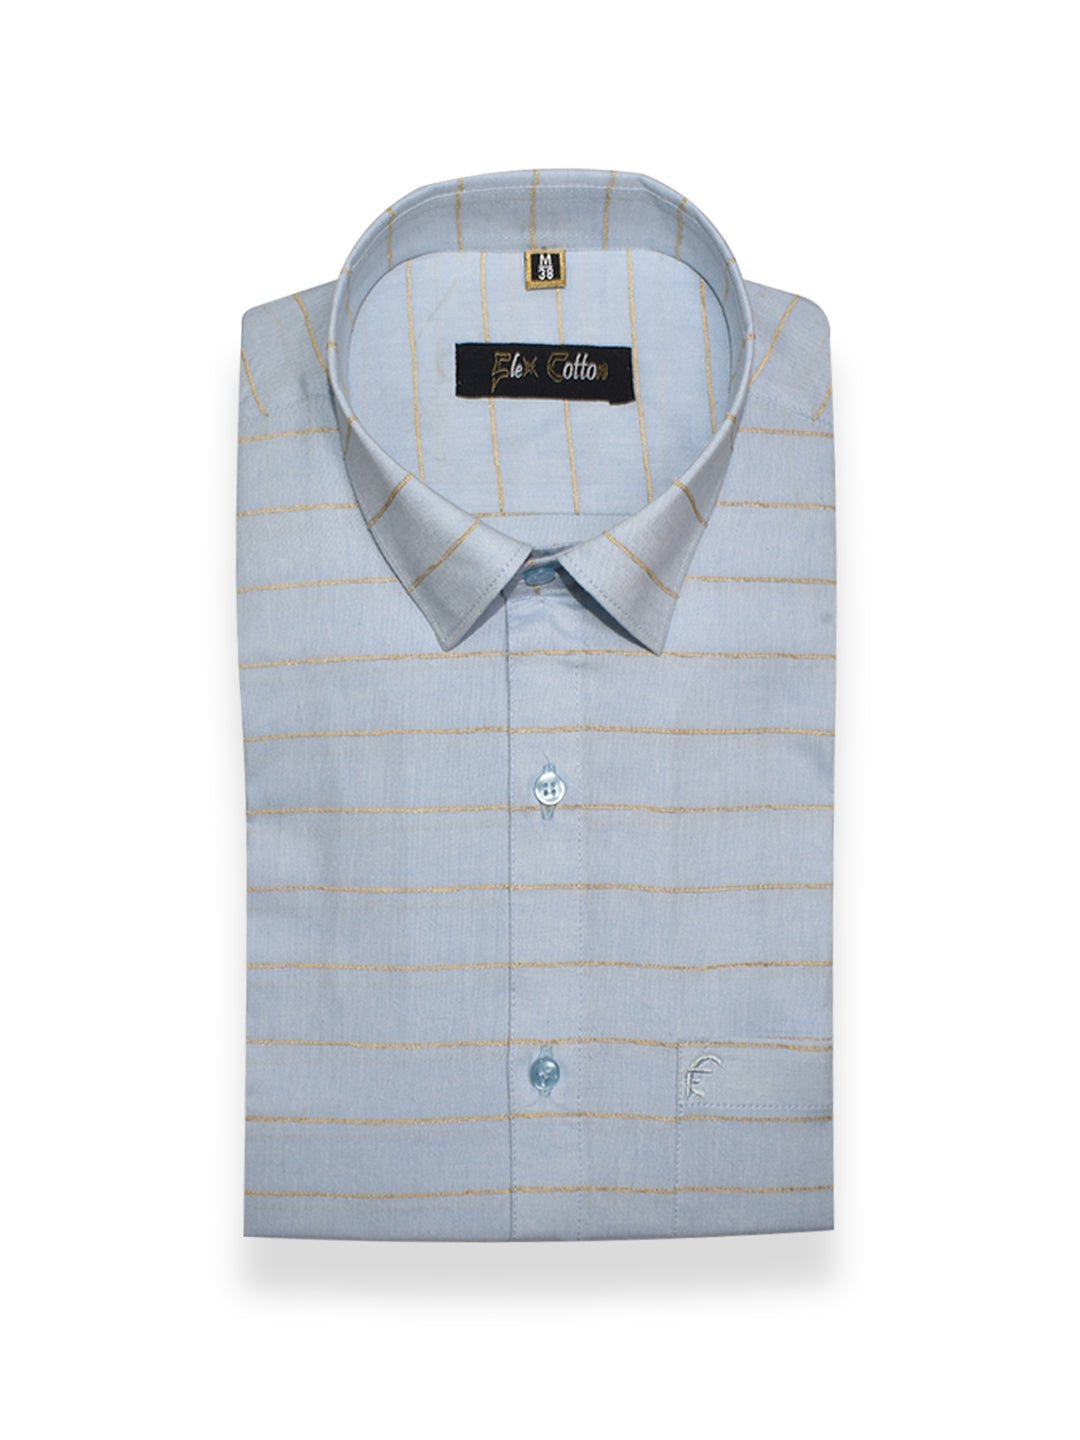 Blue Color 3D Lining Cotton Shirts For Men&